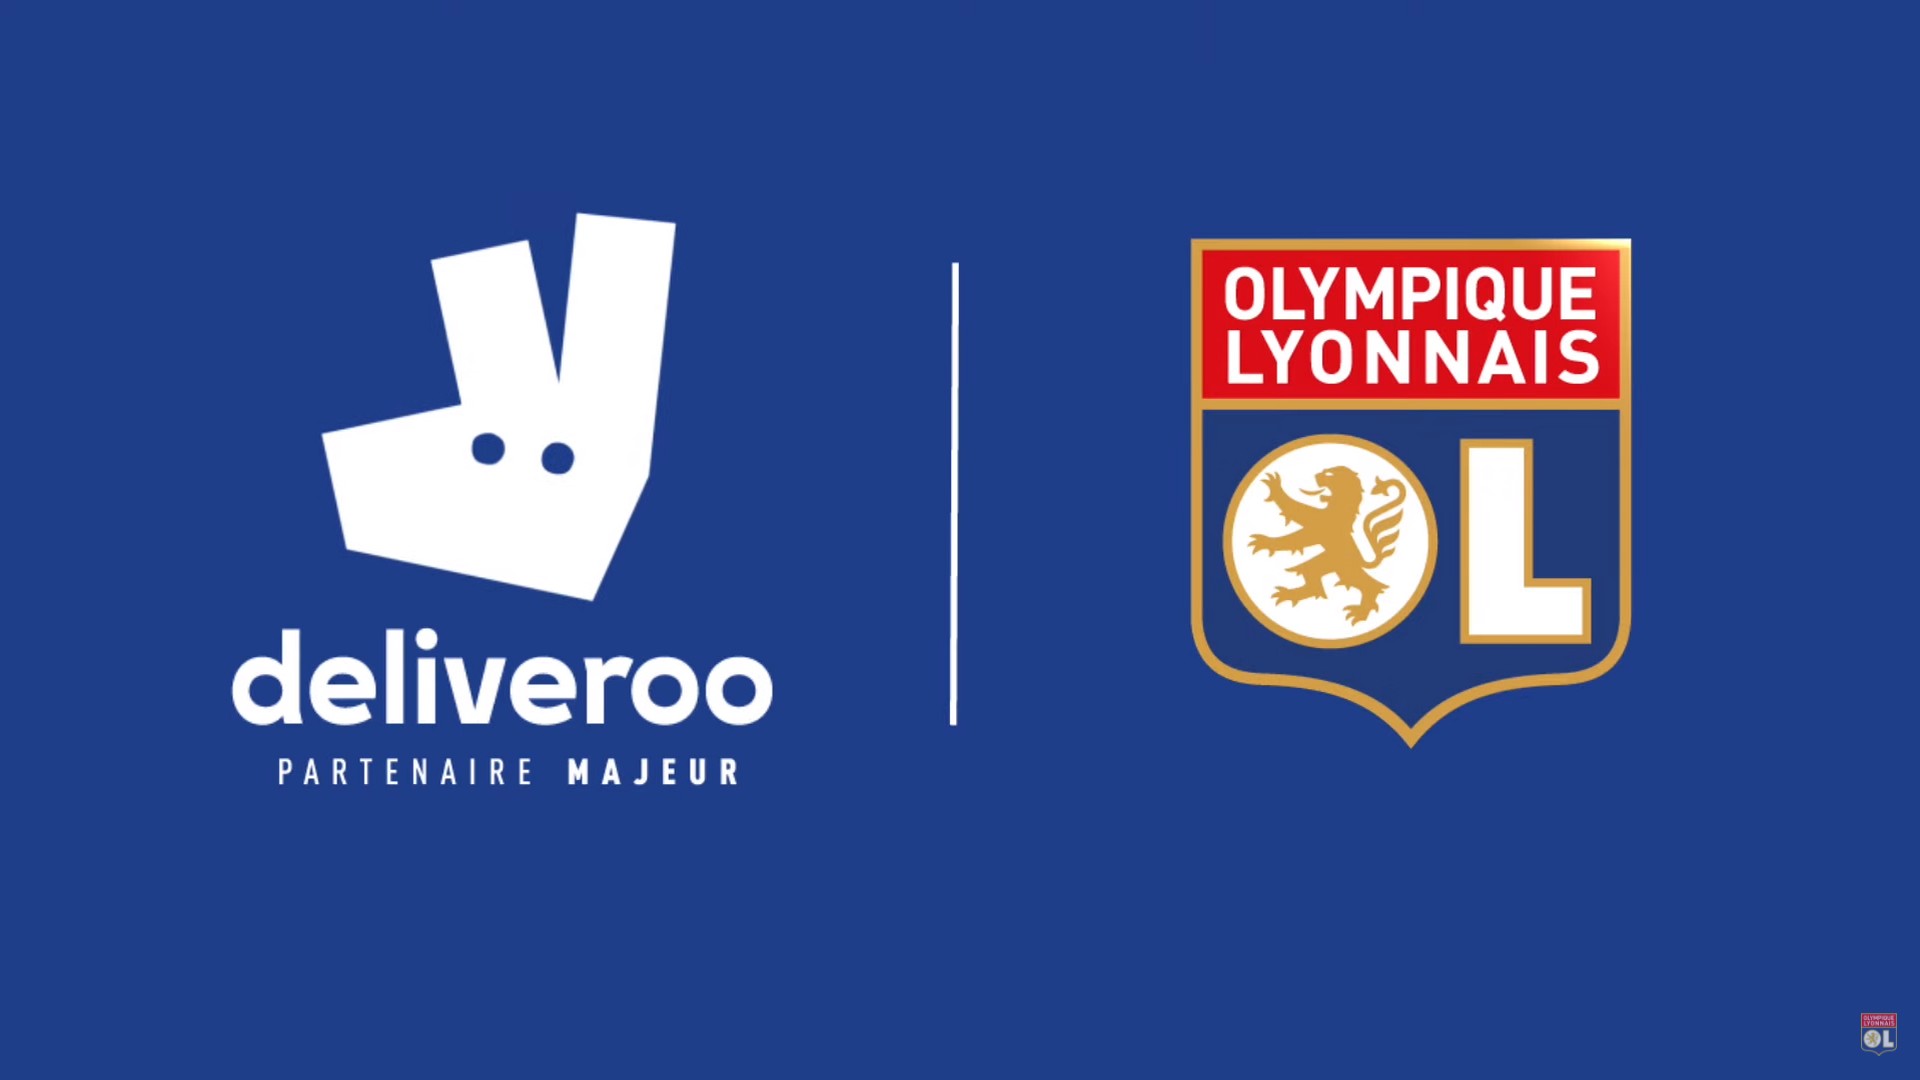 Deliveroo x Olympique Lyonnais (football) 2019